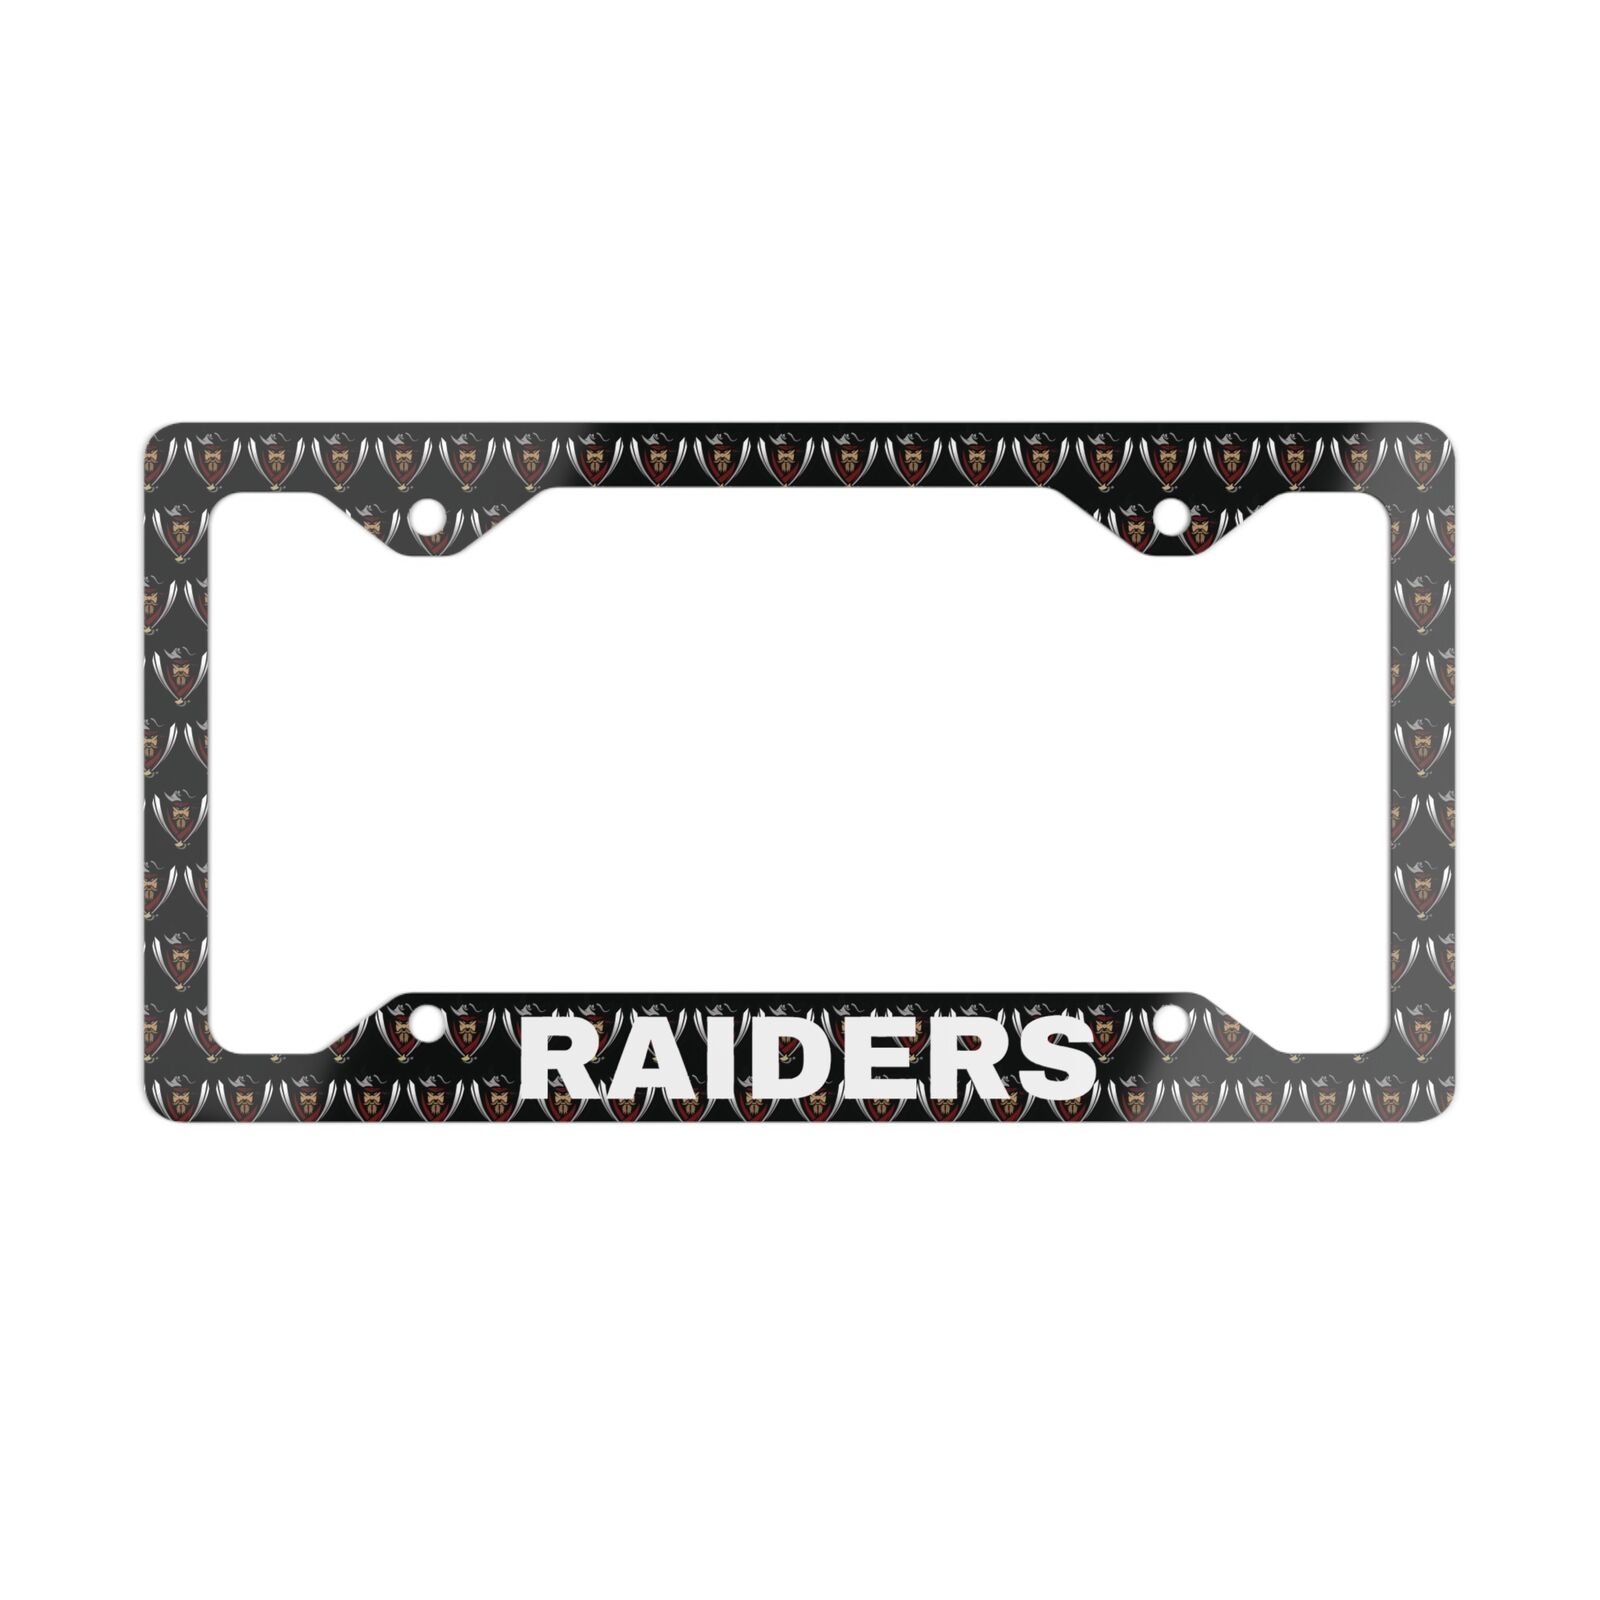 Metal License Plate Frame -Raiders